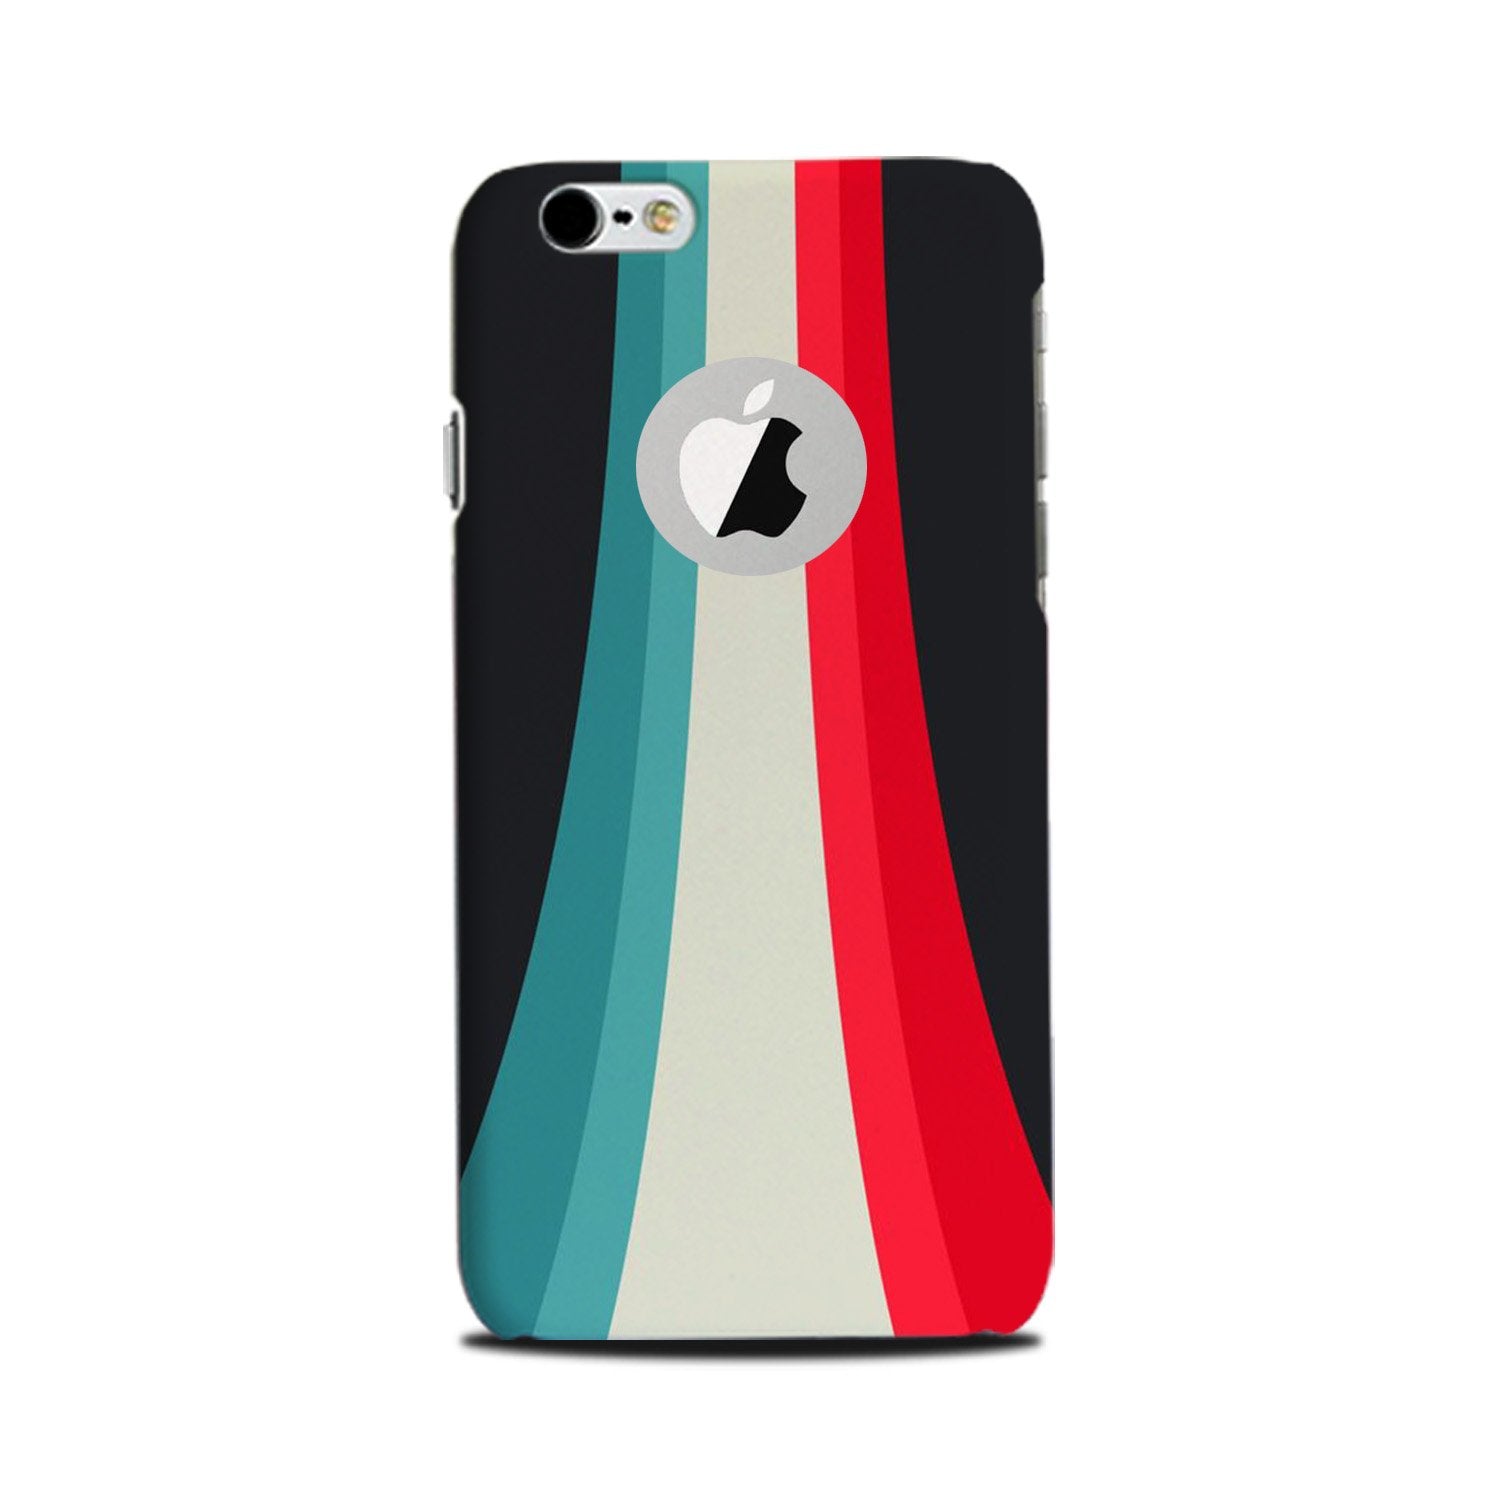 Slider Case for iPhone 6 Plus / 6s Plus logo cut(Design - 189)